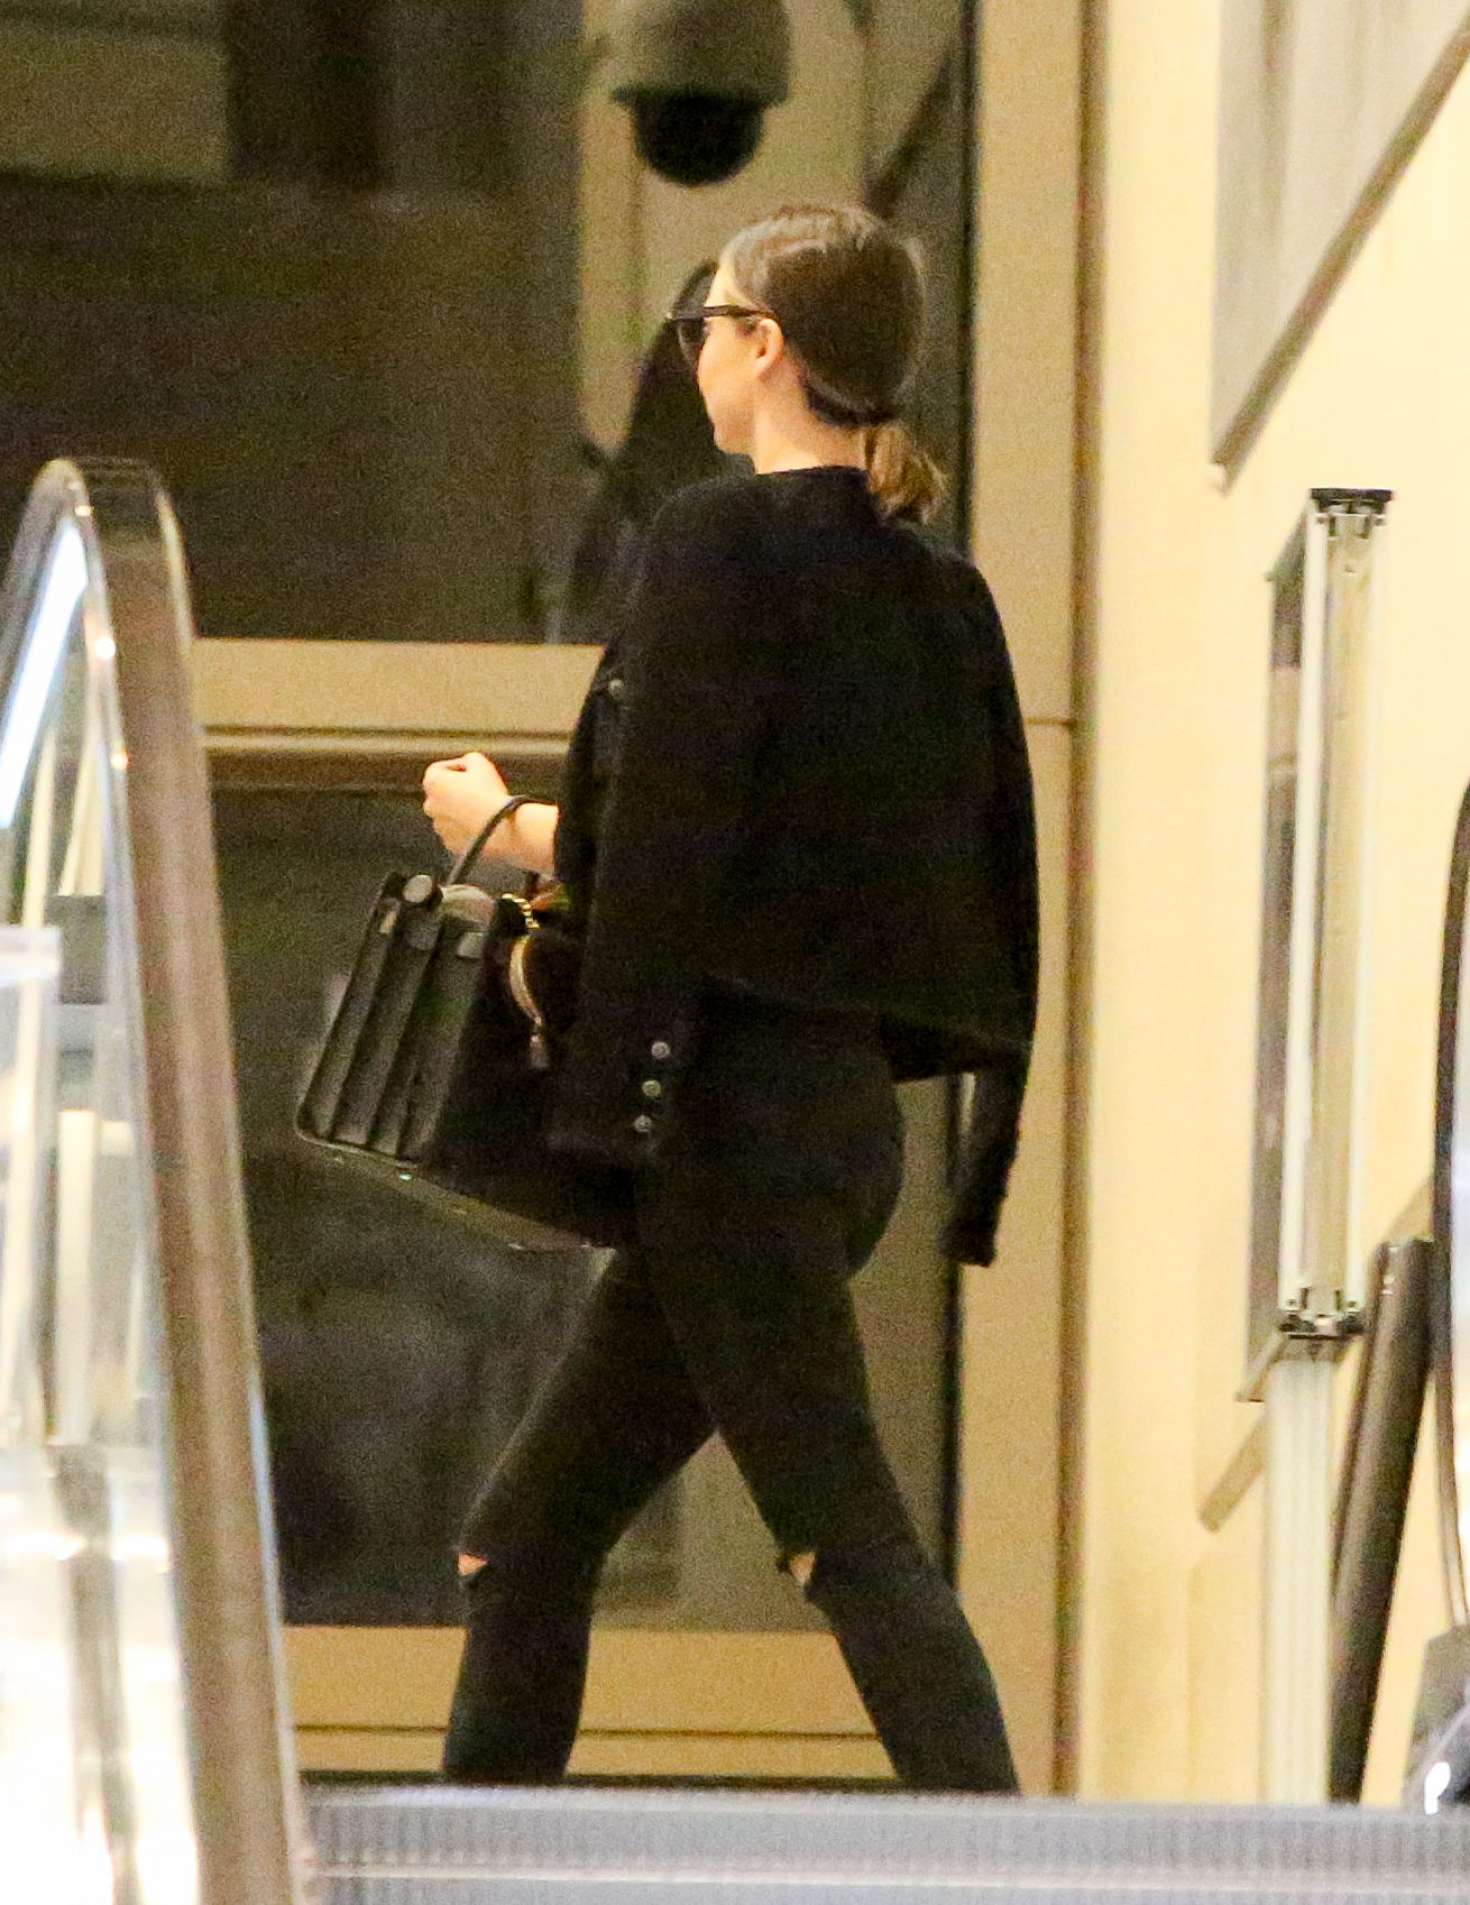 Miranda Kerr in Black Jeans at LAX Airport in LA